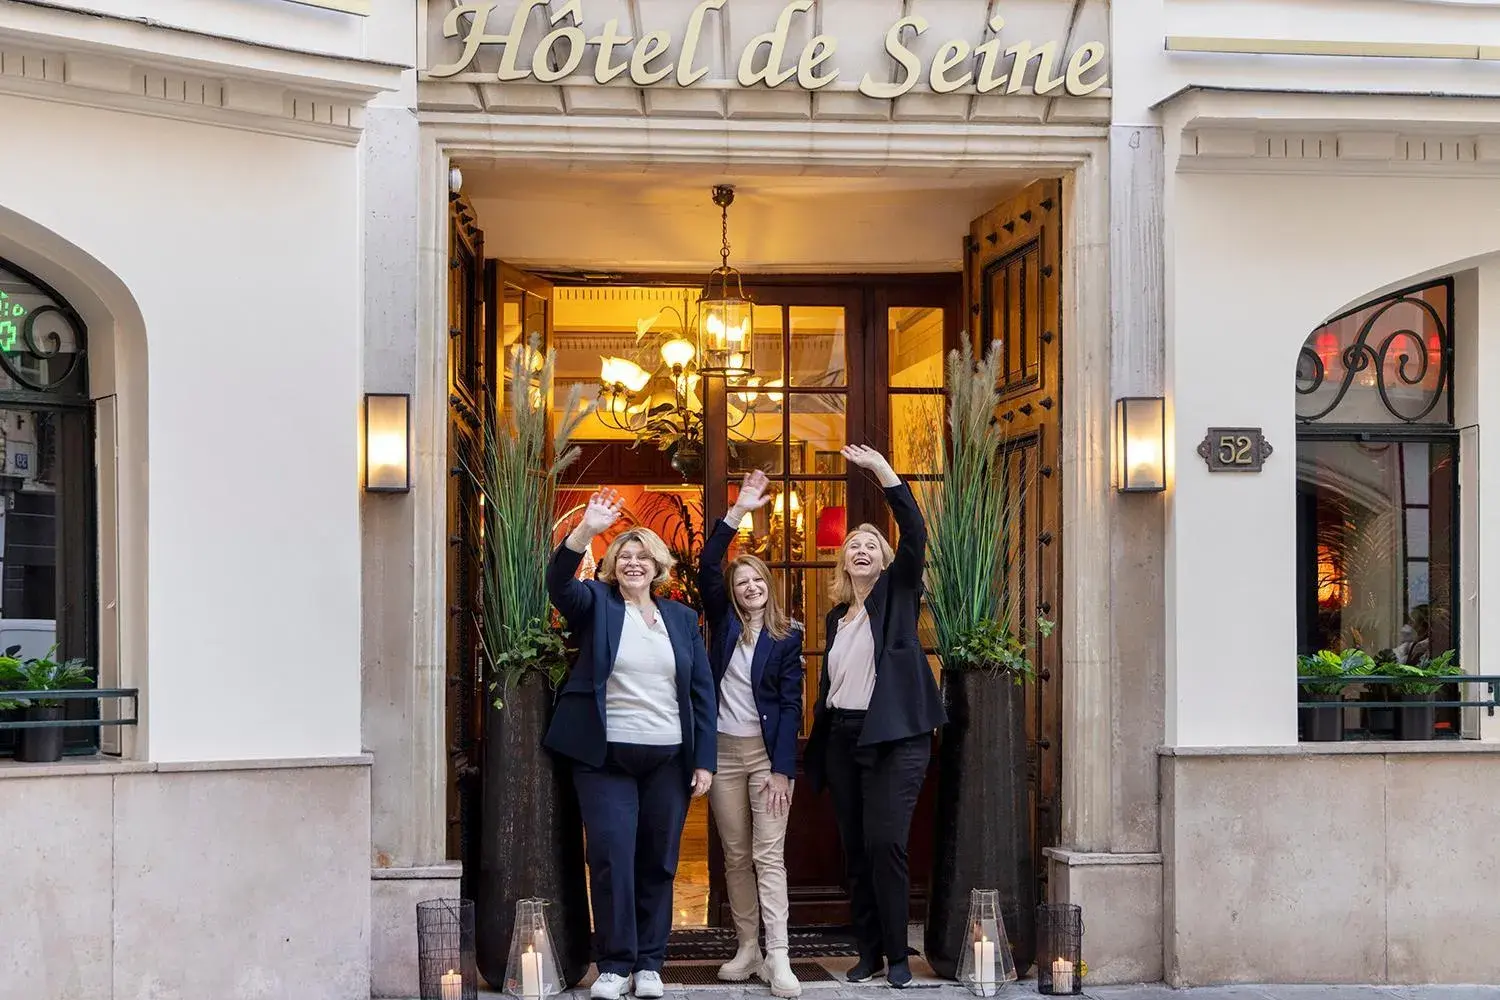 Staff, Guests in Hotel De Seine